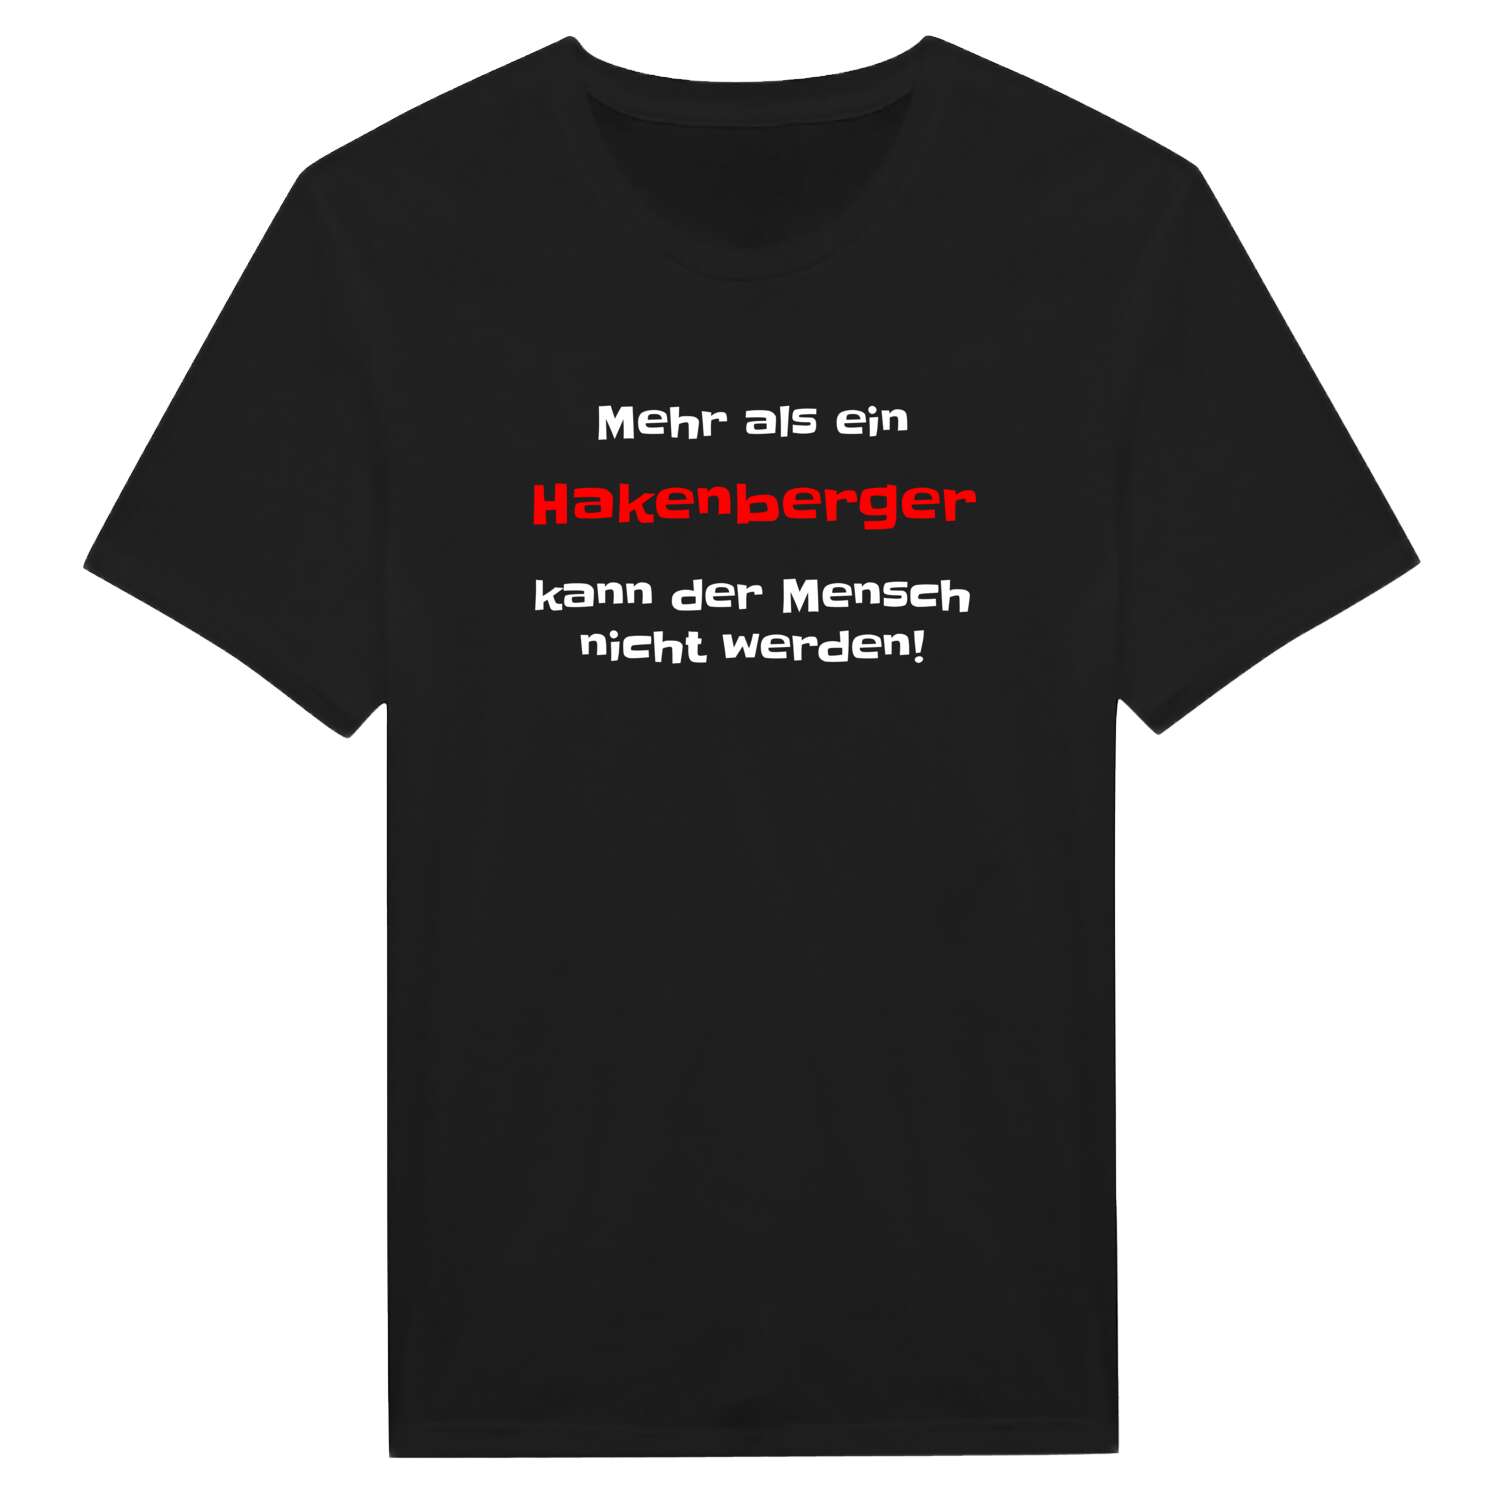 Hakenberg T-Shirt »Mehr als ein«